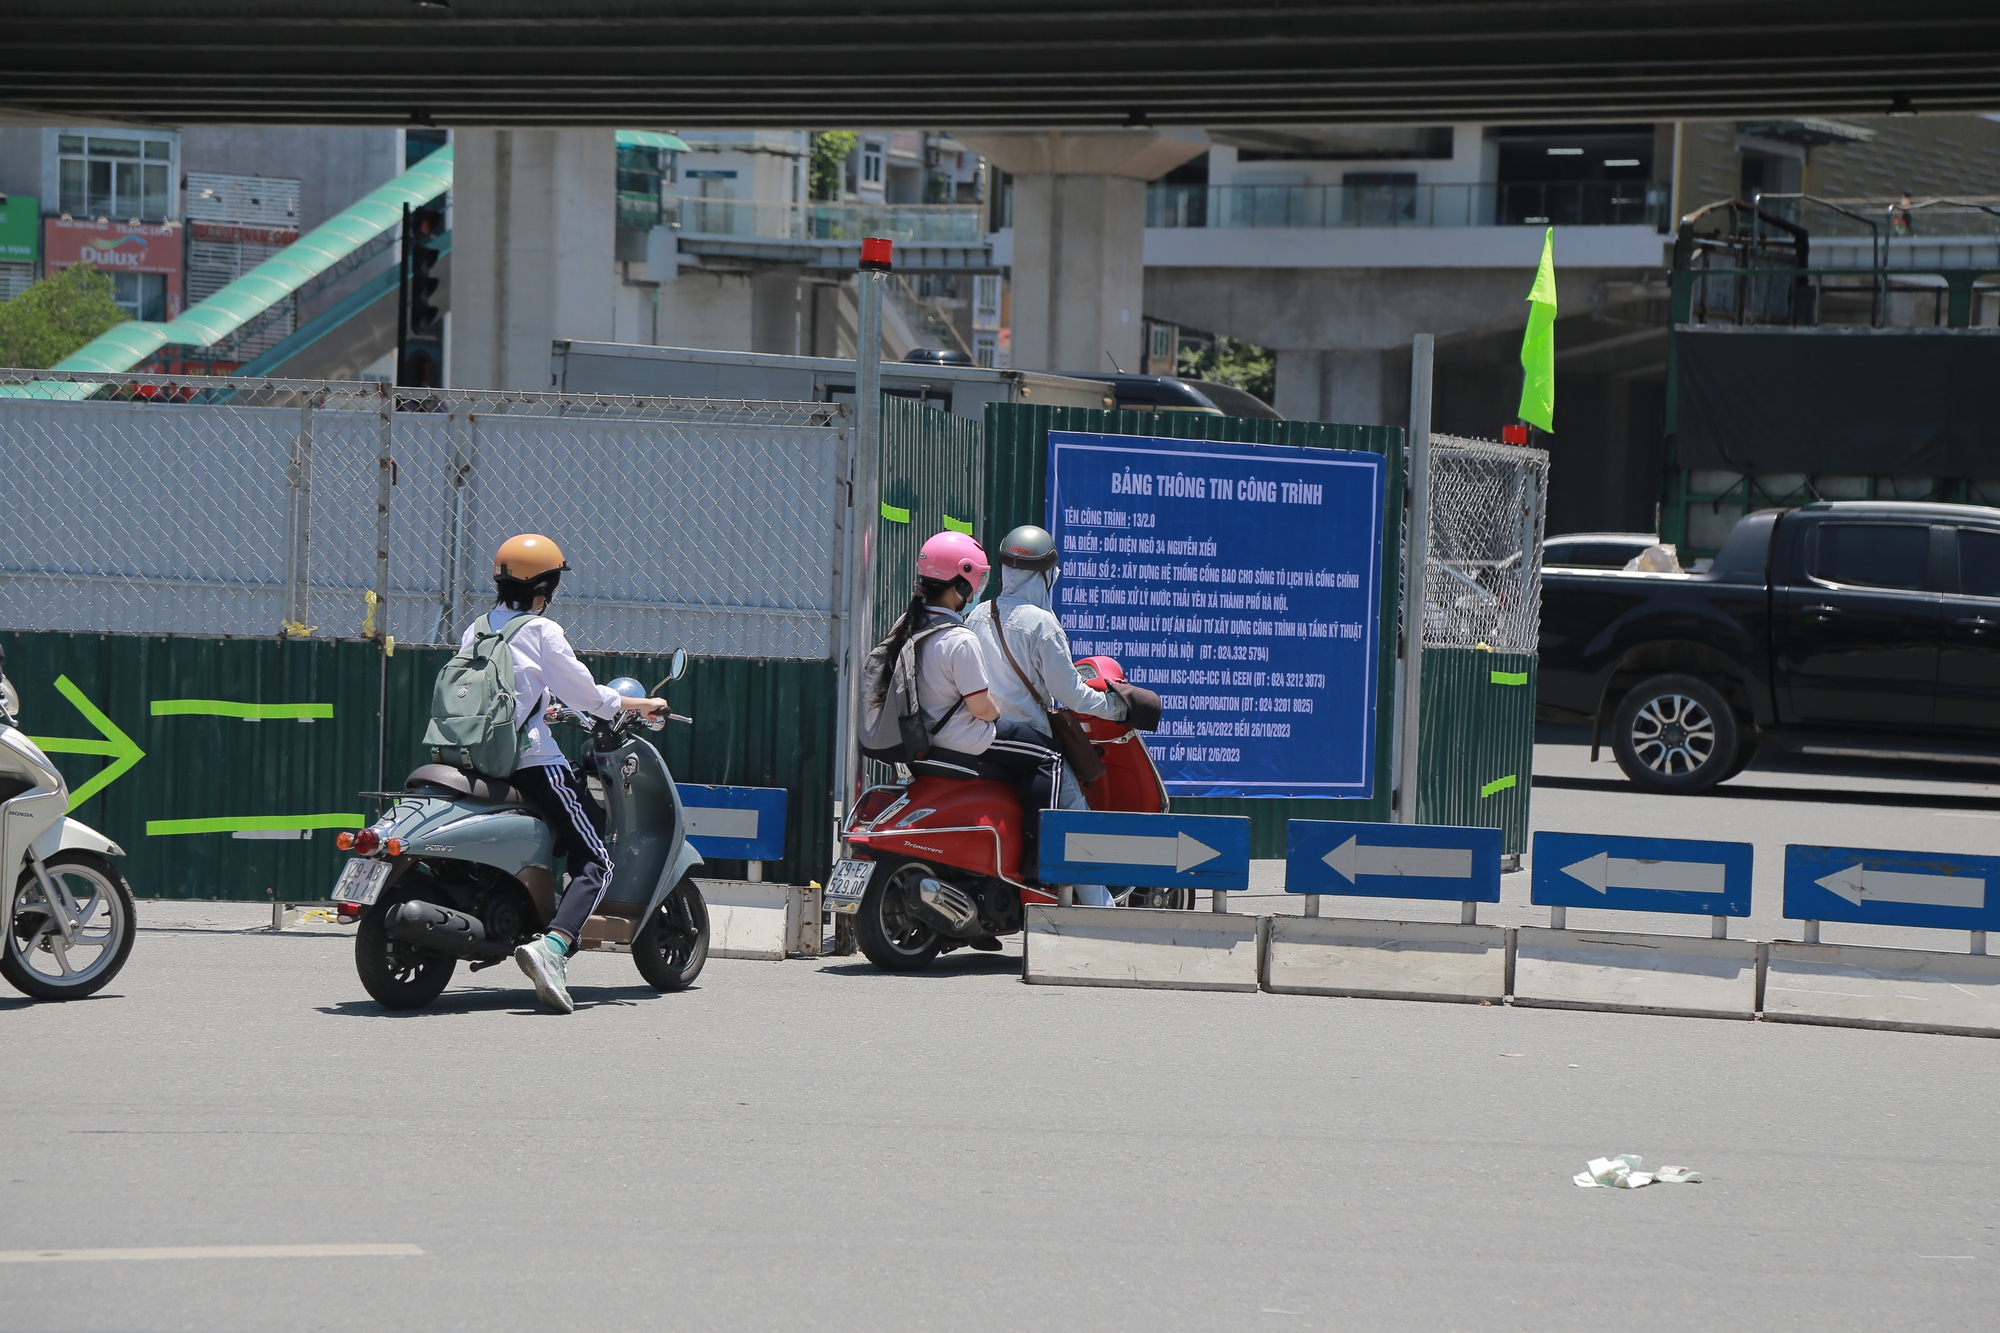 Rào kín đường, chính thức cấm đi thẳng, rẽ trái tại nút giao Nguyễn Trãi - Ảnh 9.